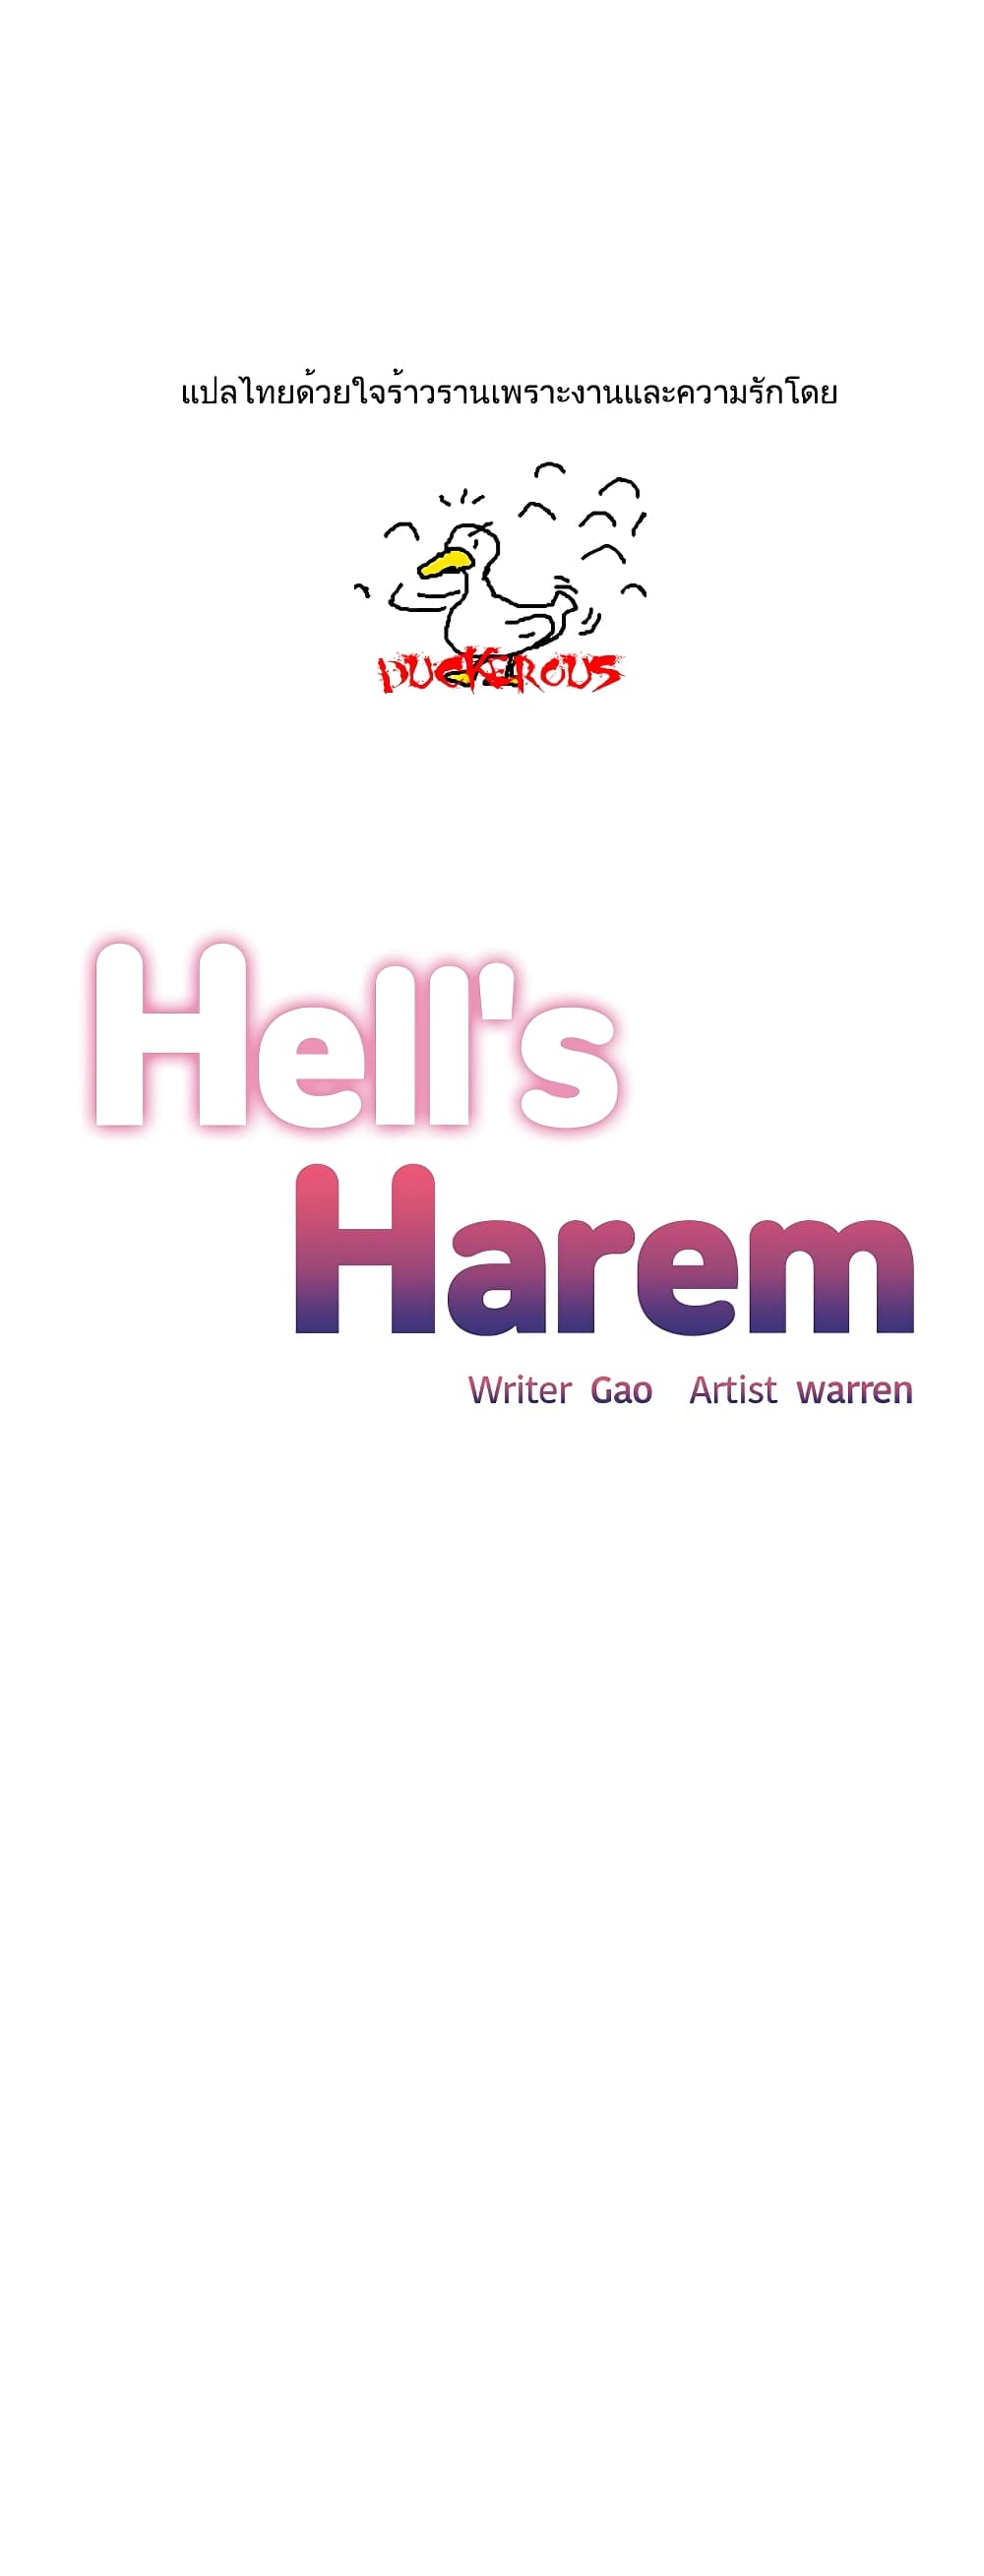 Hell's Harem 41 (1)